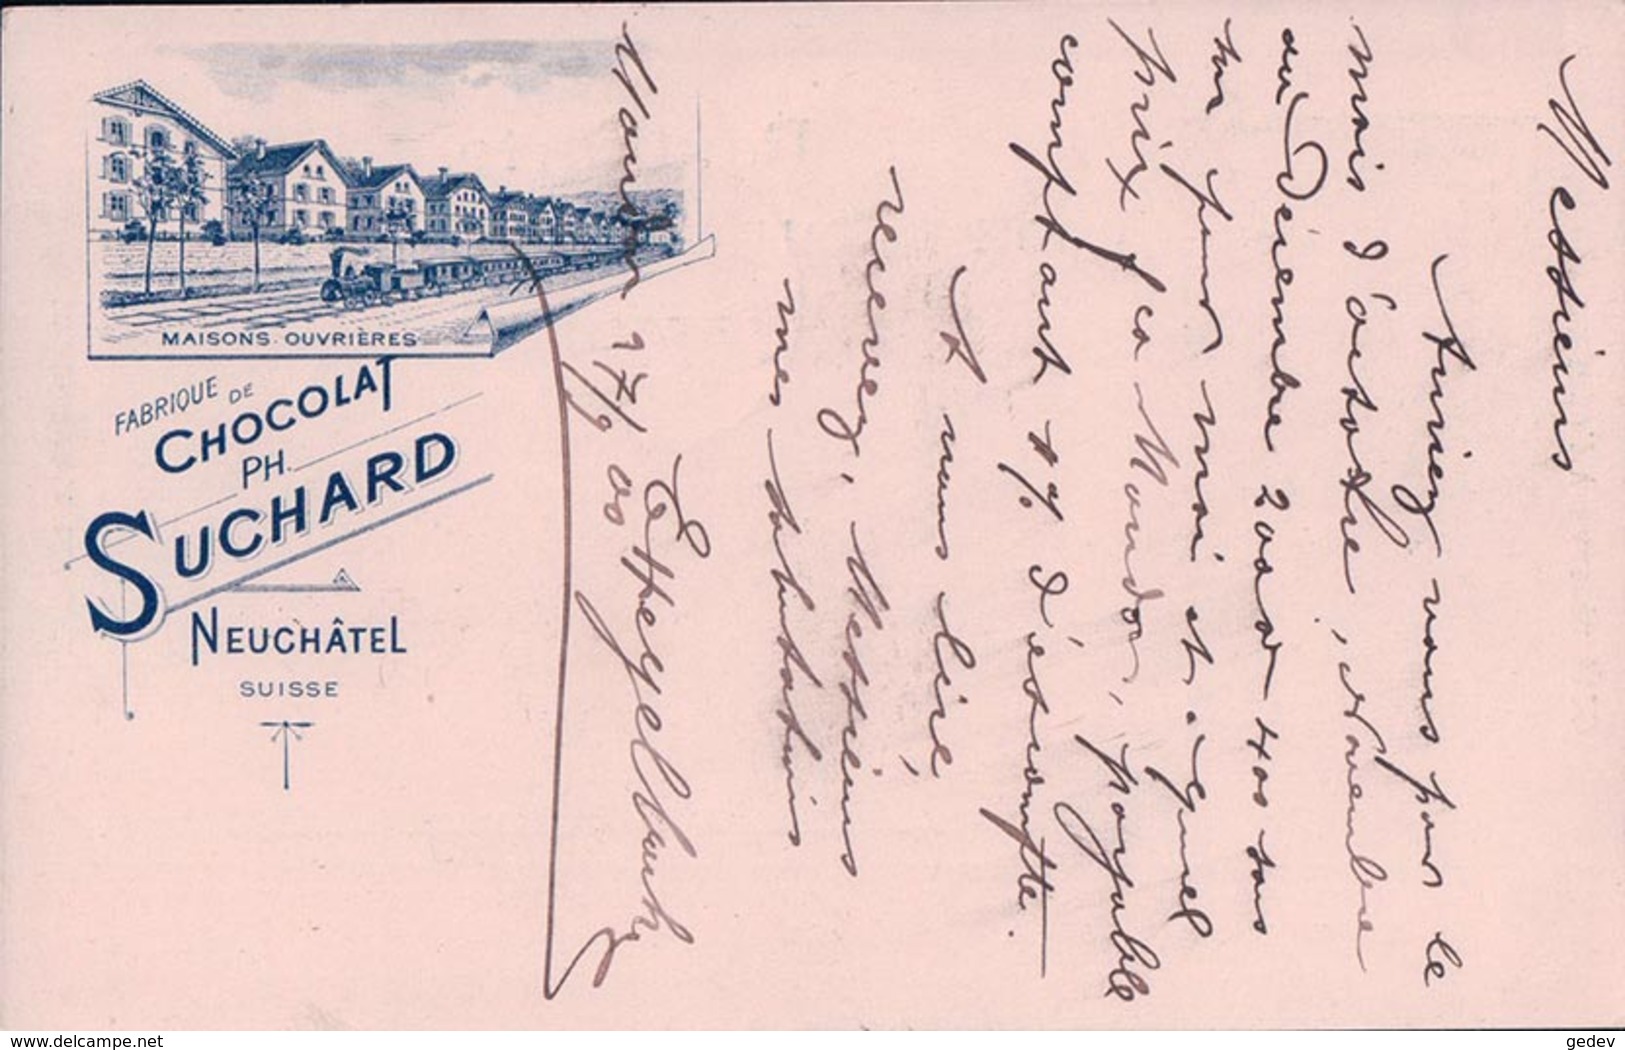 Publicité, Entier Postal Suisse Chocolat Suchard, Tampon E. Hegelbach Farines Maïs,  Moudon - Serrières NE (27.9.1900) - Entiers Postaux